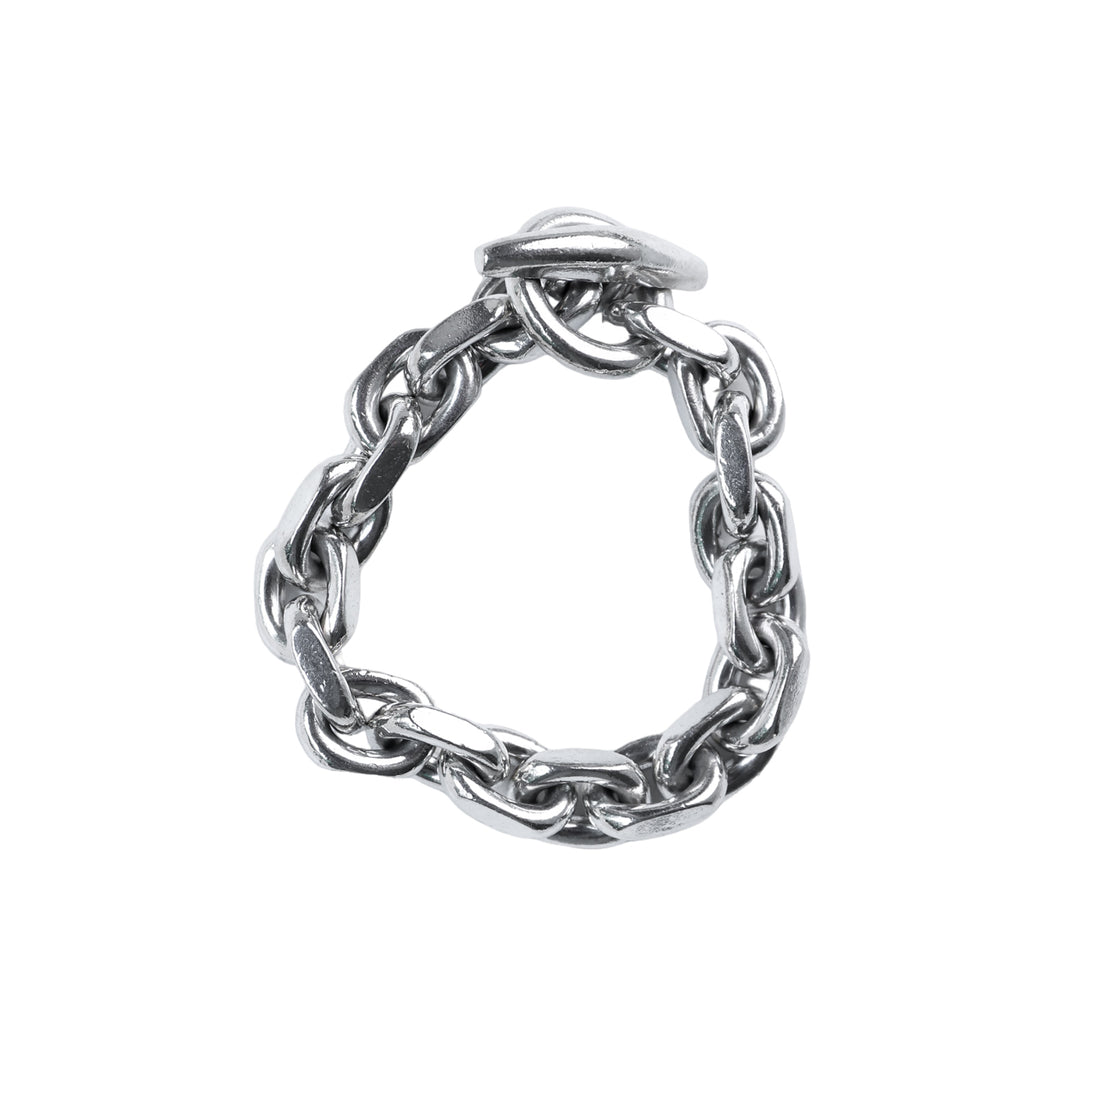 Georg Jensen solid link bracelet made of silver